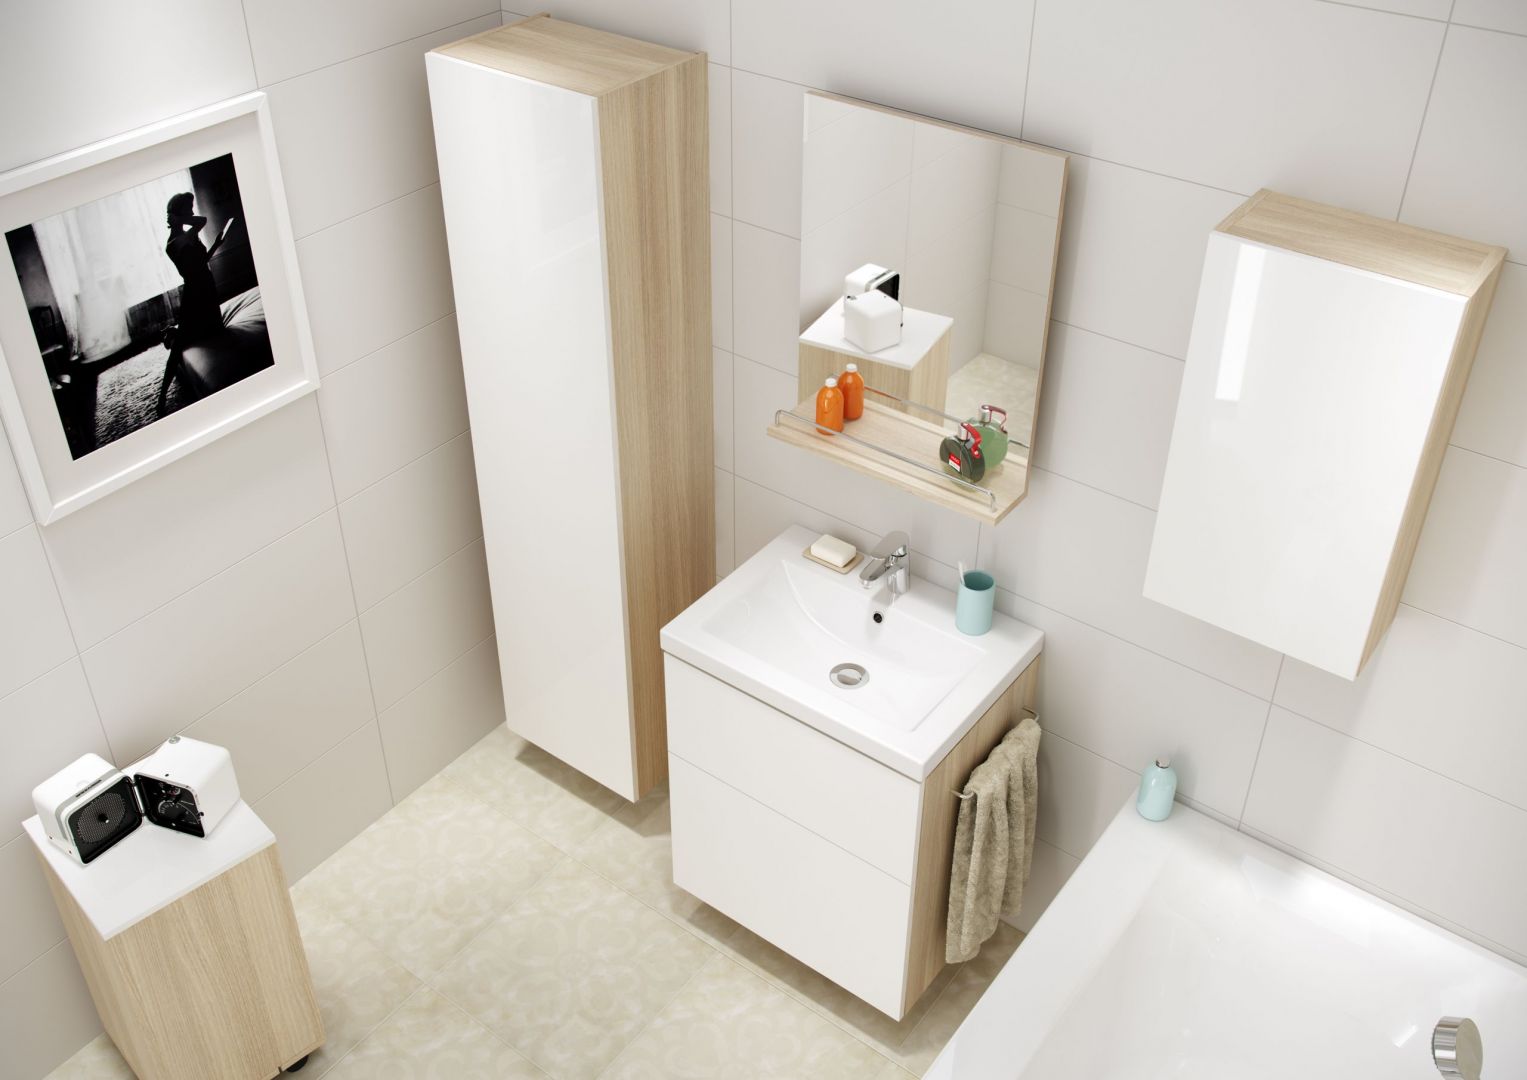 Kolekcja Smart marki Cersanit to doskonała propozycja, jeśli łazienka ma być jasna, ale też ciepła w odbiorze. Fot. Cersanit 